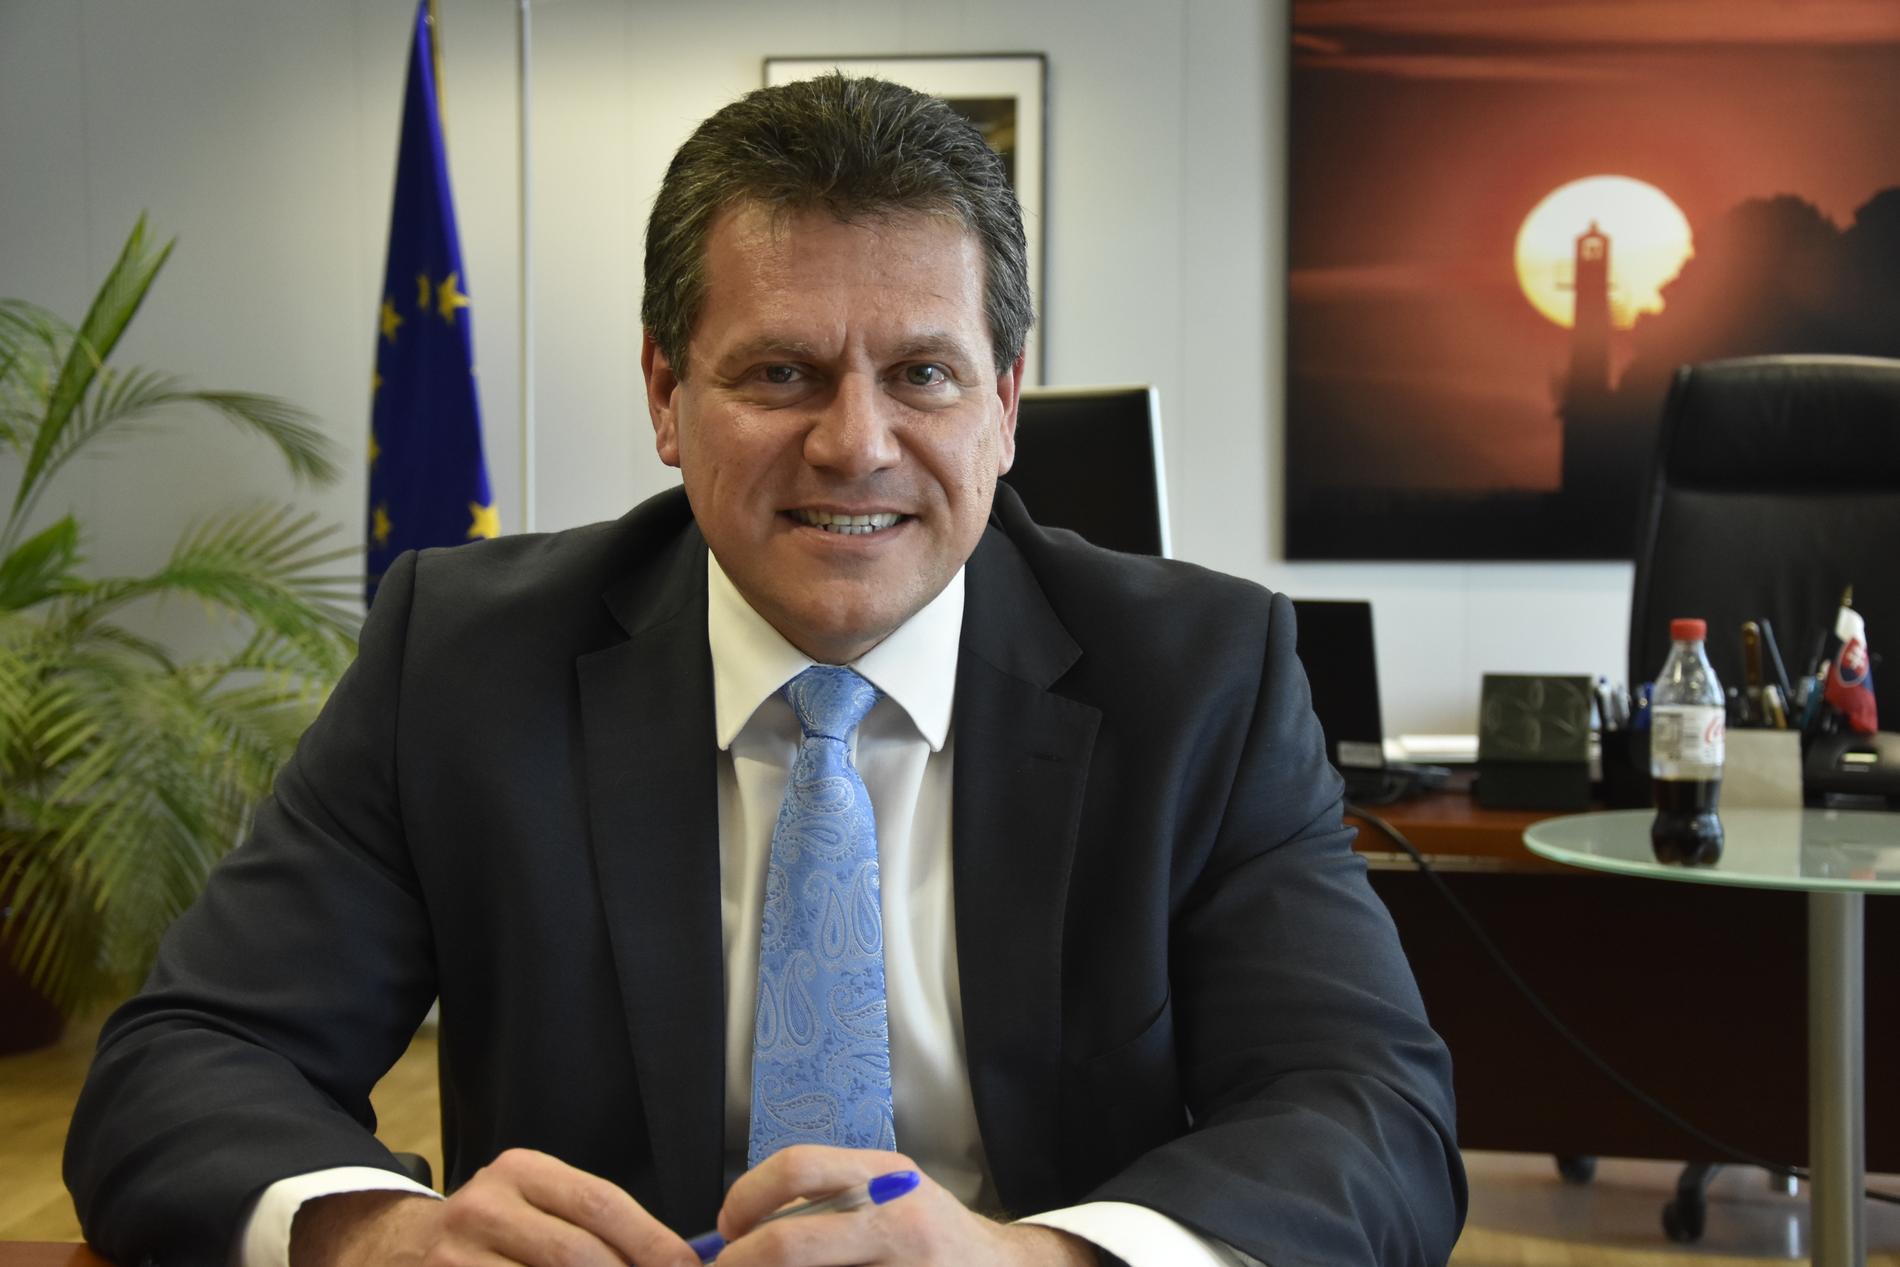 Maros Sefcovic, som tidigare varit EU:s energikommissionär, är det slovakiska maktpartiet Smers presidentkandidat.